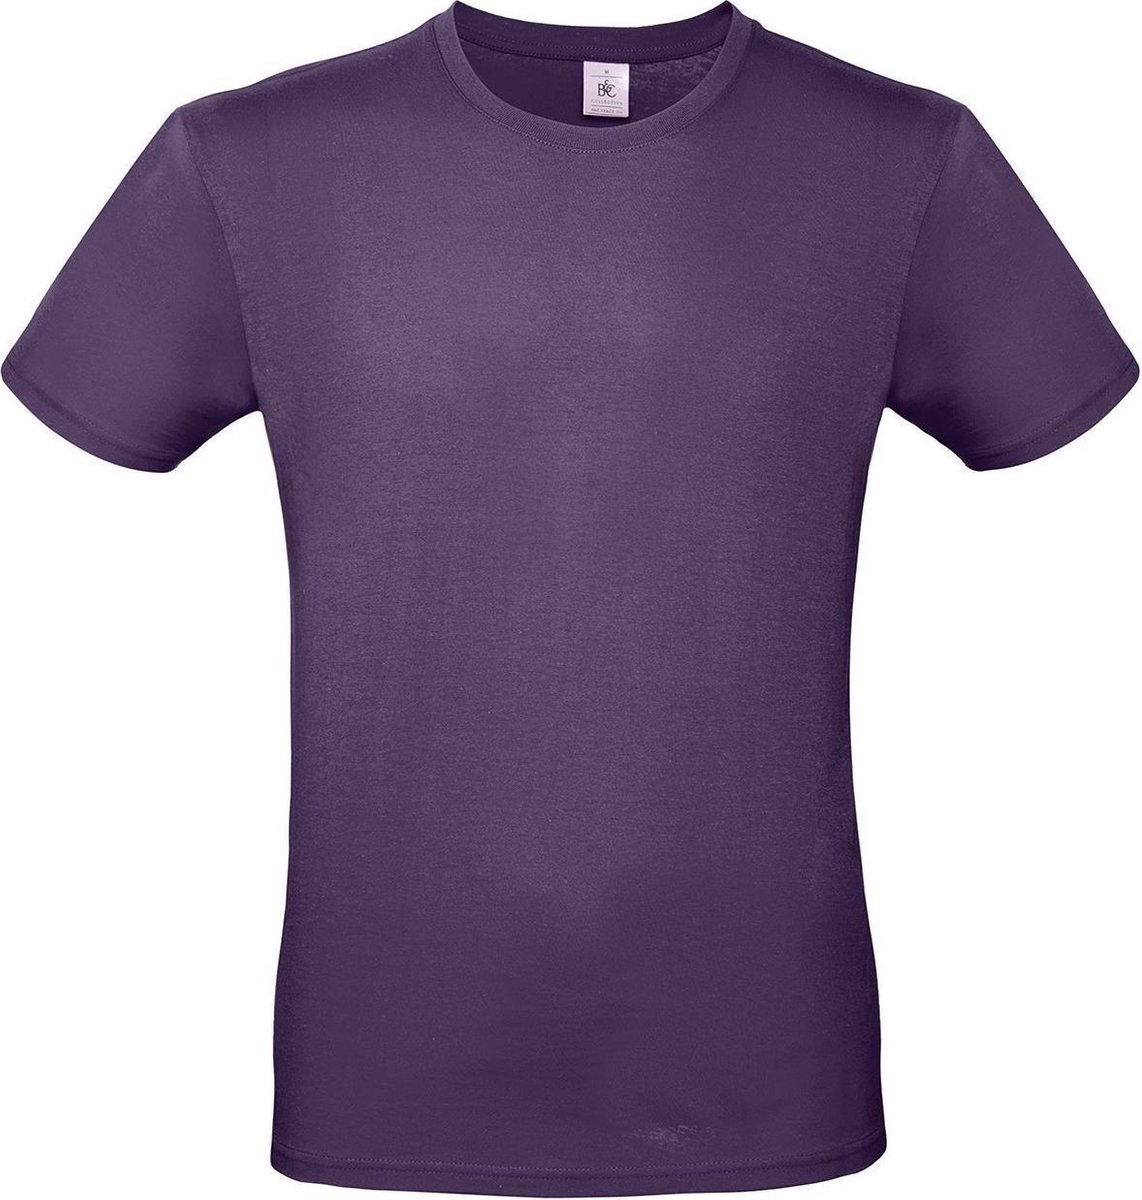 Set van 2x stuks paars basic t-shirt met ronde hals voor heren - katoen - 145 grams - paarse shirts / kleding, maat: 2XL (56)